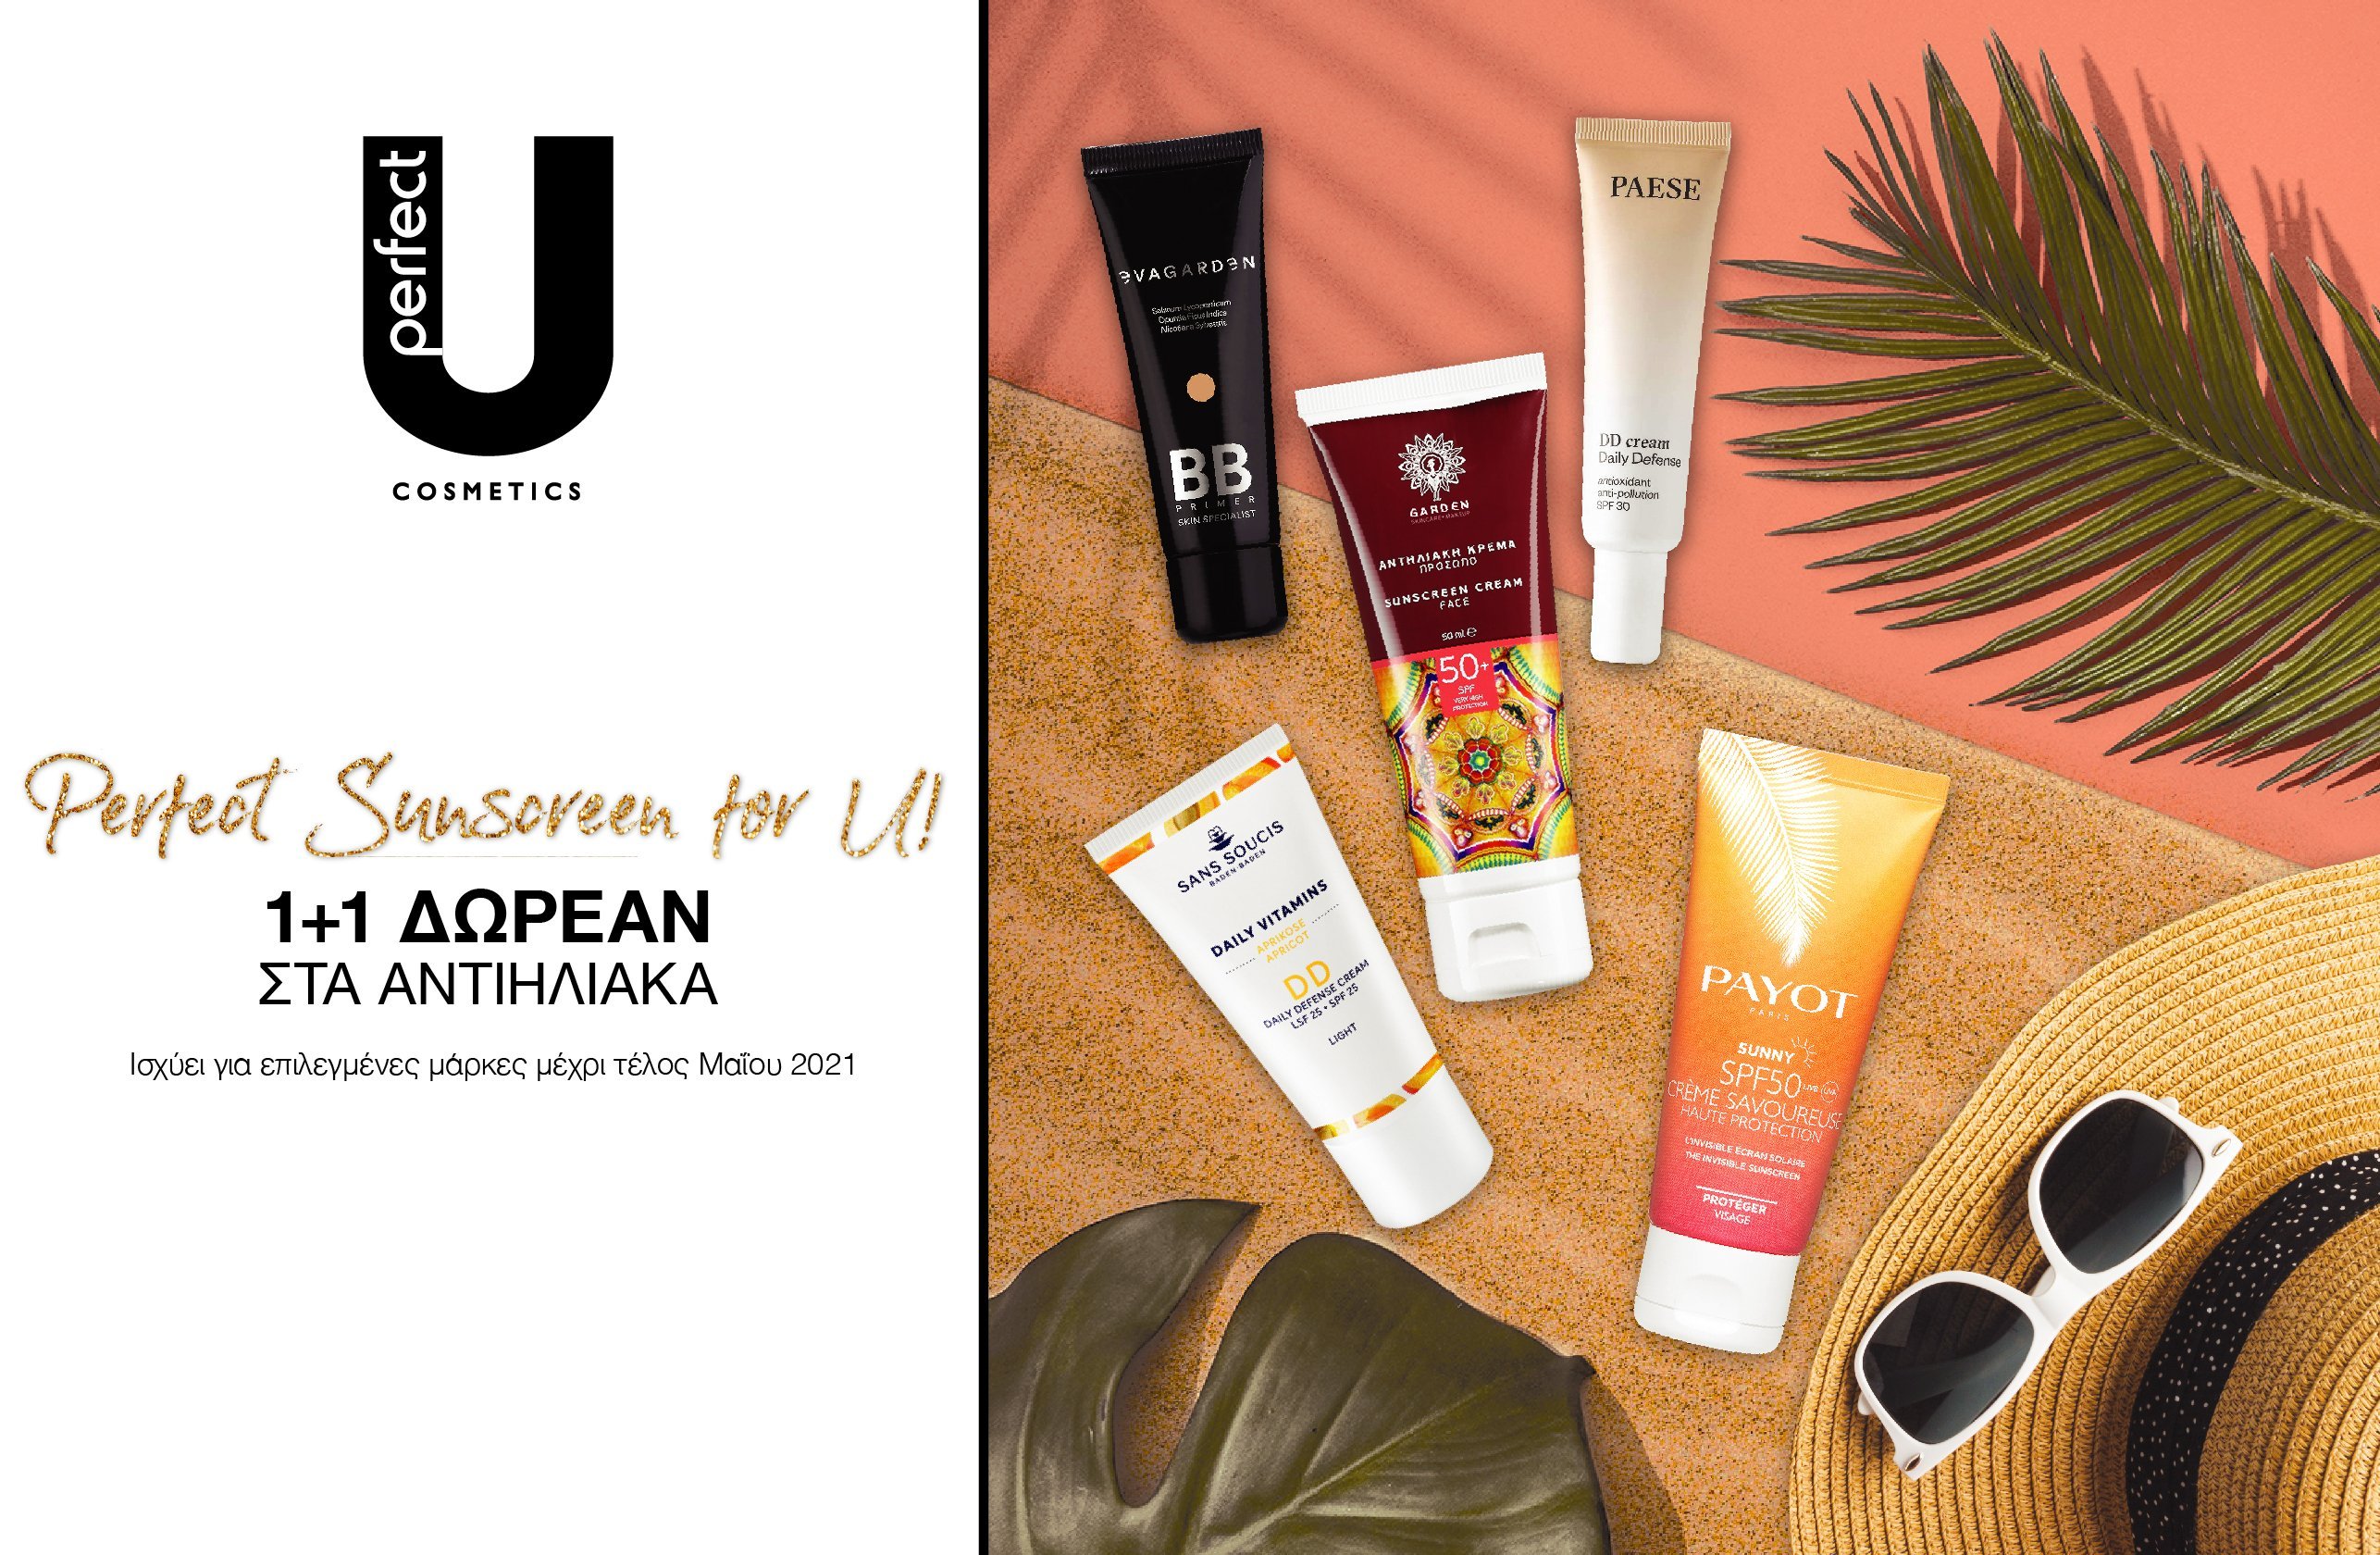 Perfect Sunscreen for U! 1+1 ΔΩΡΕΑΝ ΣΤΑ ΑΝΤΙΗΛΙΑΚΑ. Ισχύει για επιλεγμένες μάρκες μέχρι το τέλος Μαΐου 2021